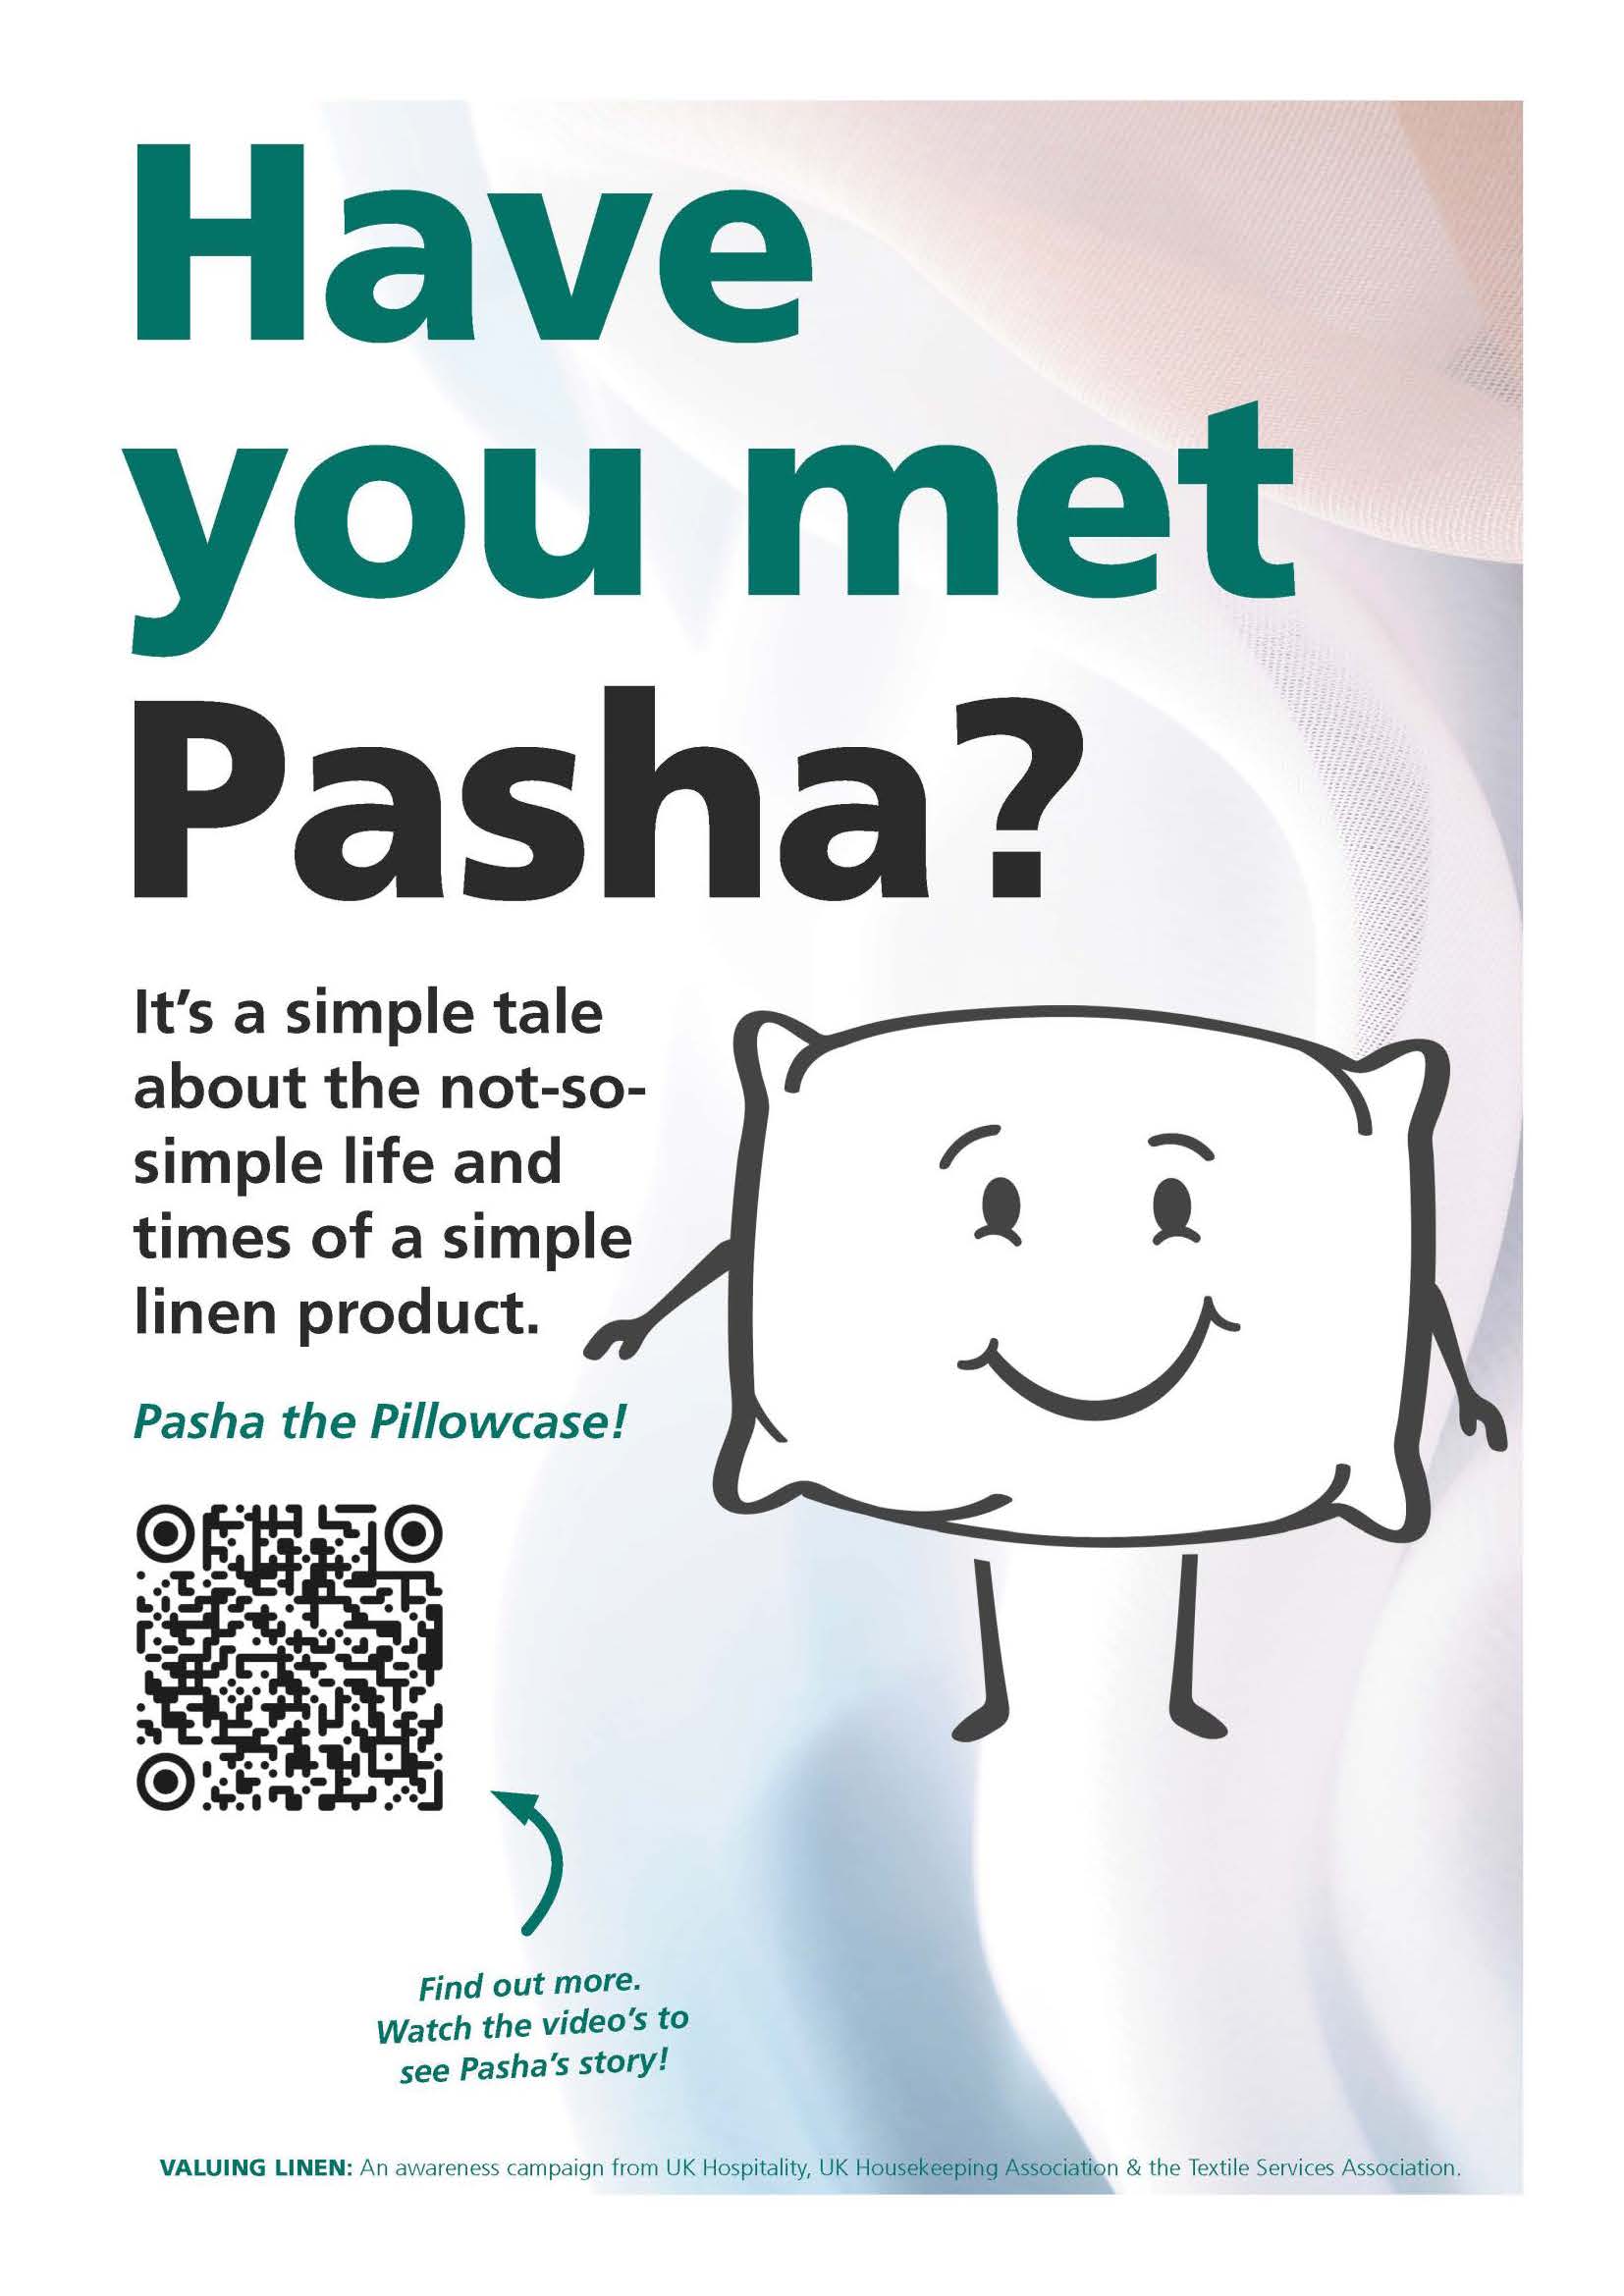 Have you met Pasha?